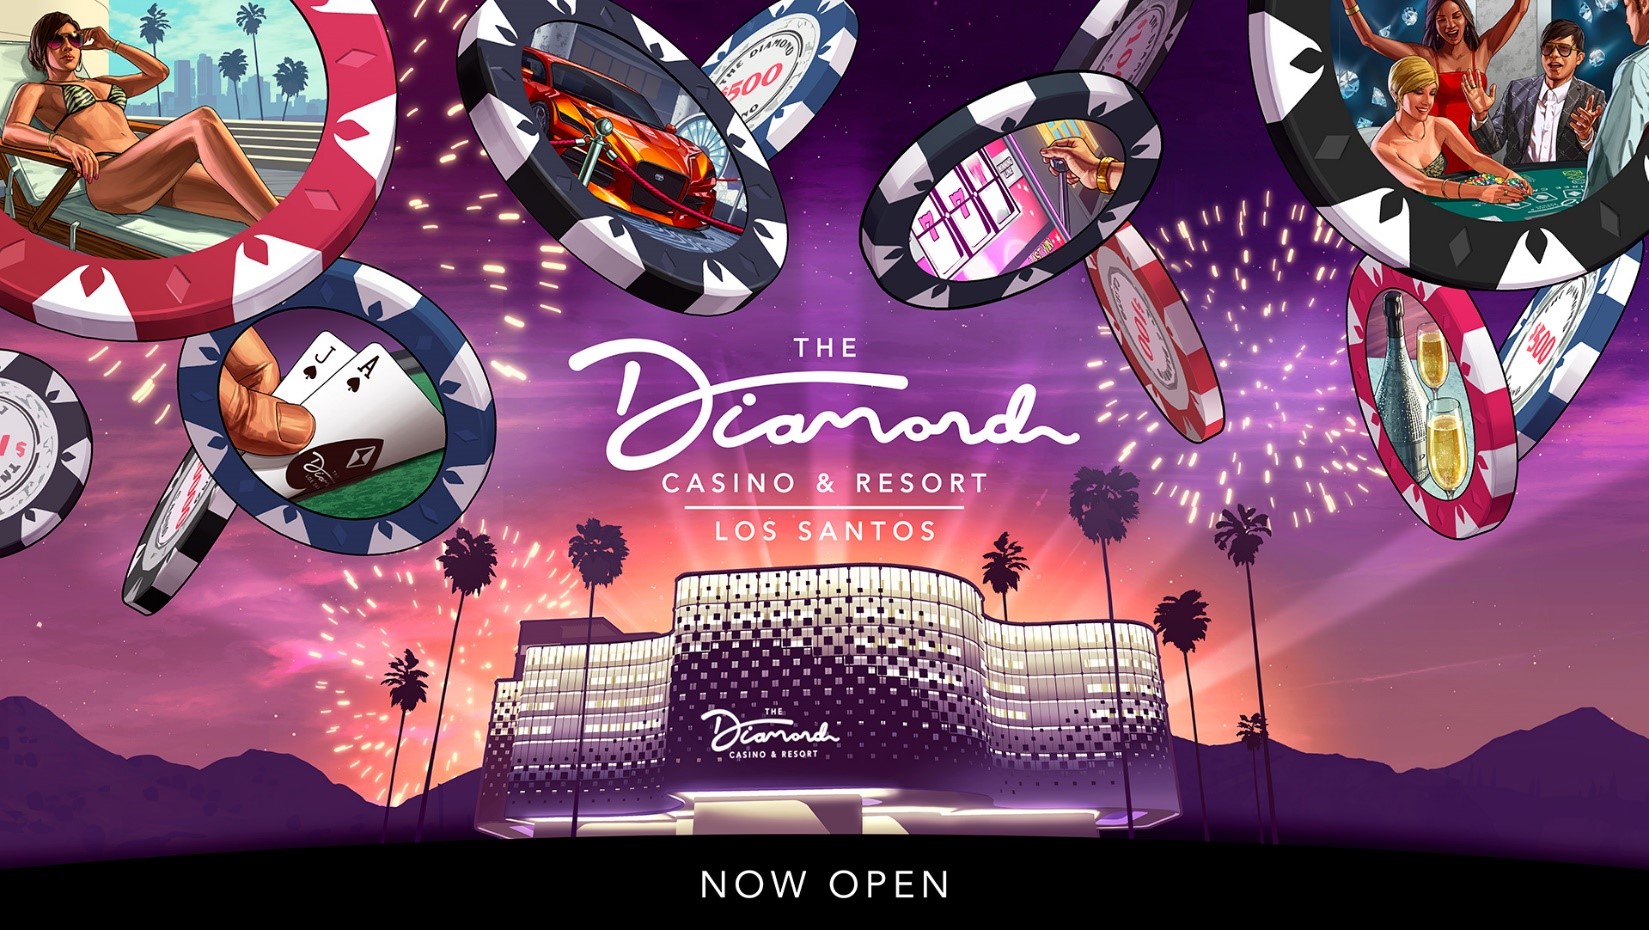 Grand Online Casino